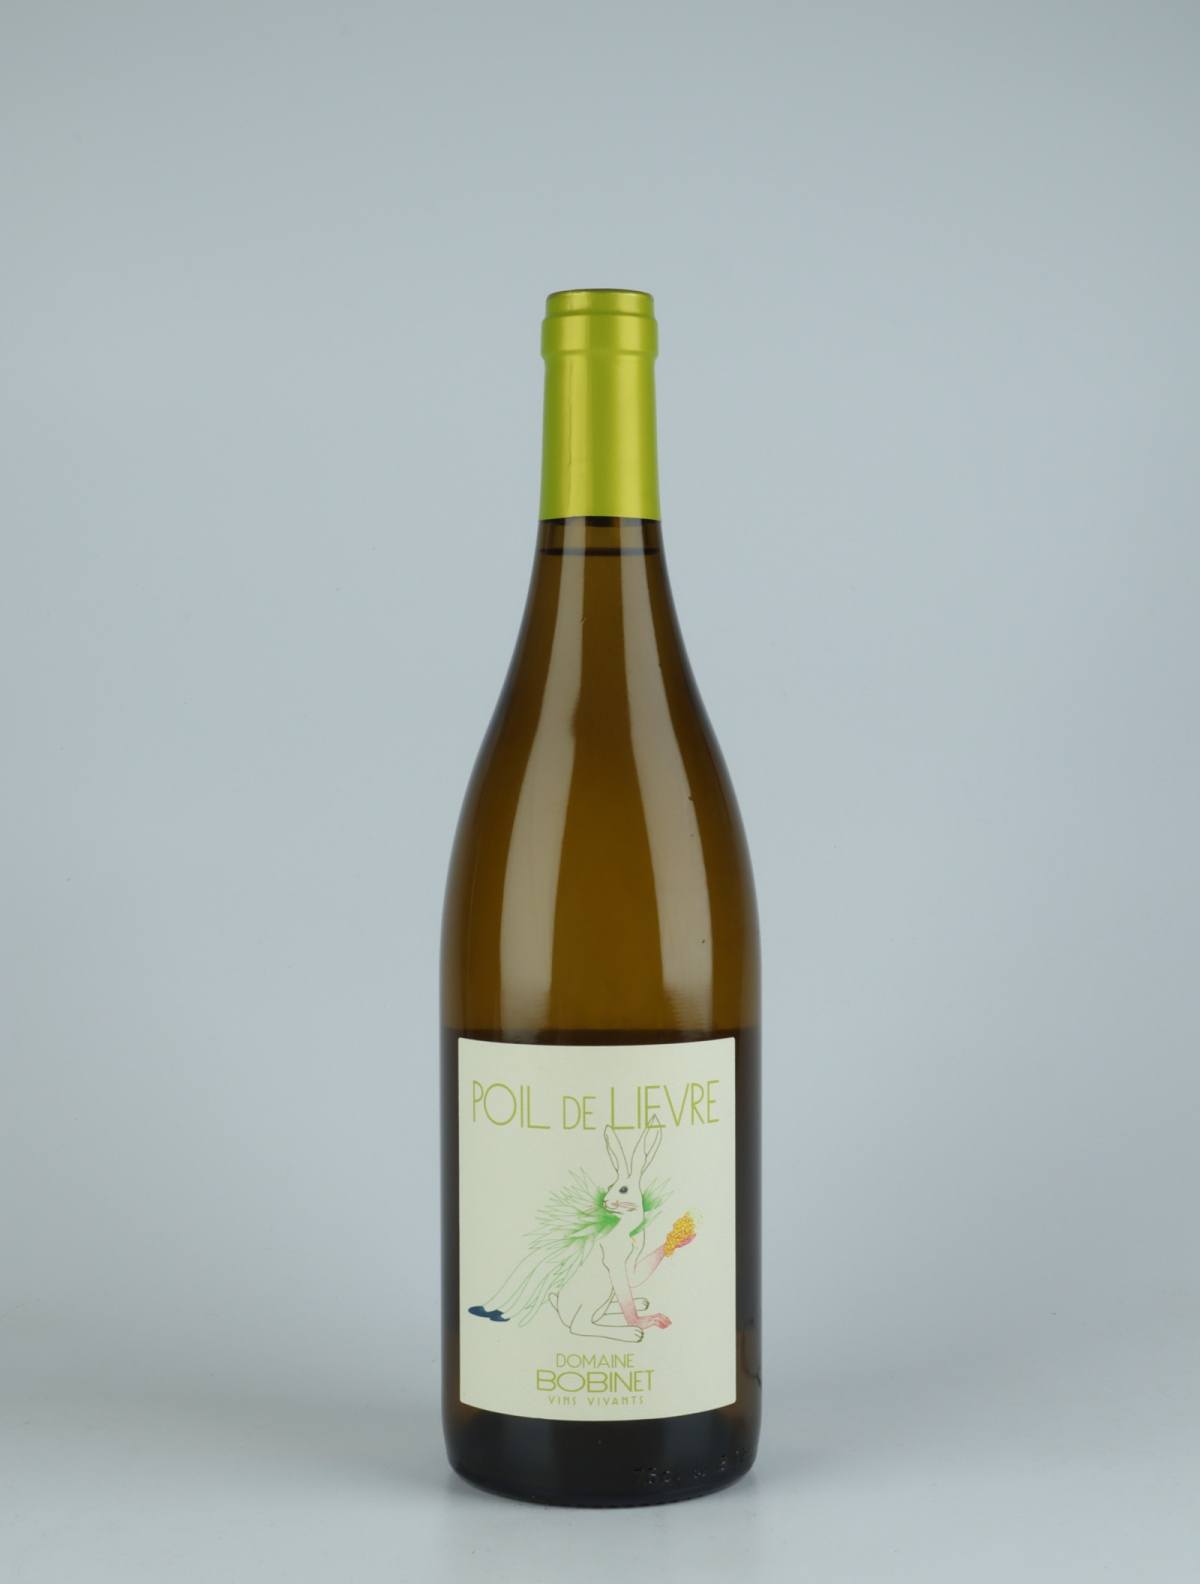 En flaske 2020 Saumur Blanc - Poil de Lièvre Hvidvin fra Domaine Bobinet, Loire i Frankrig